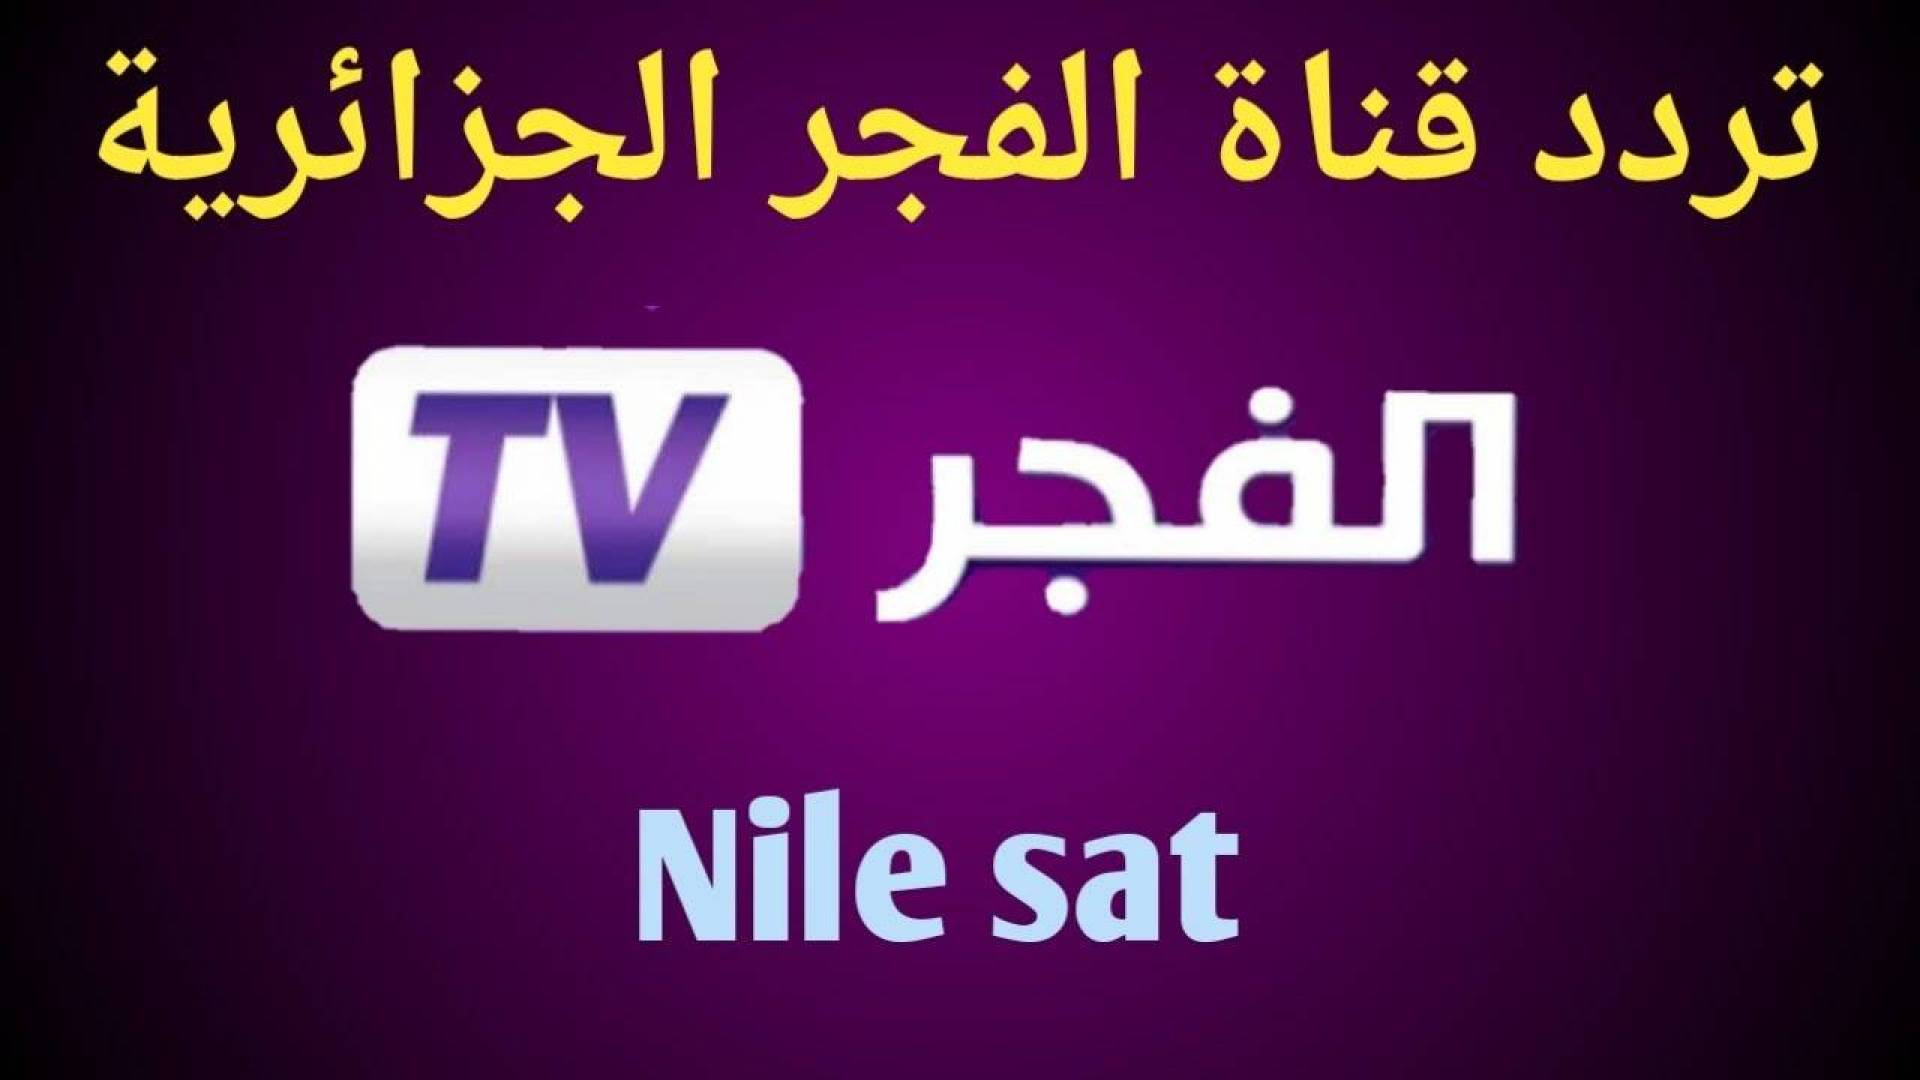 تردد الفجر الجزائرية الجديد وتابع الحلقة الجديدة اليوم من المؤسس عثمان الموسم الخامس